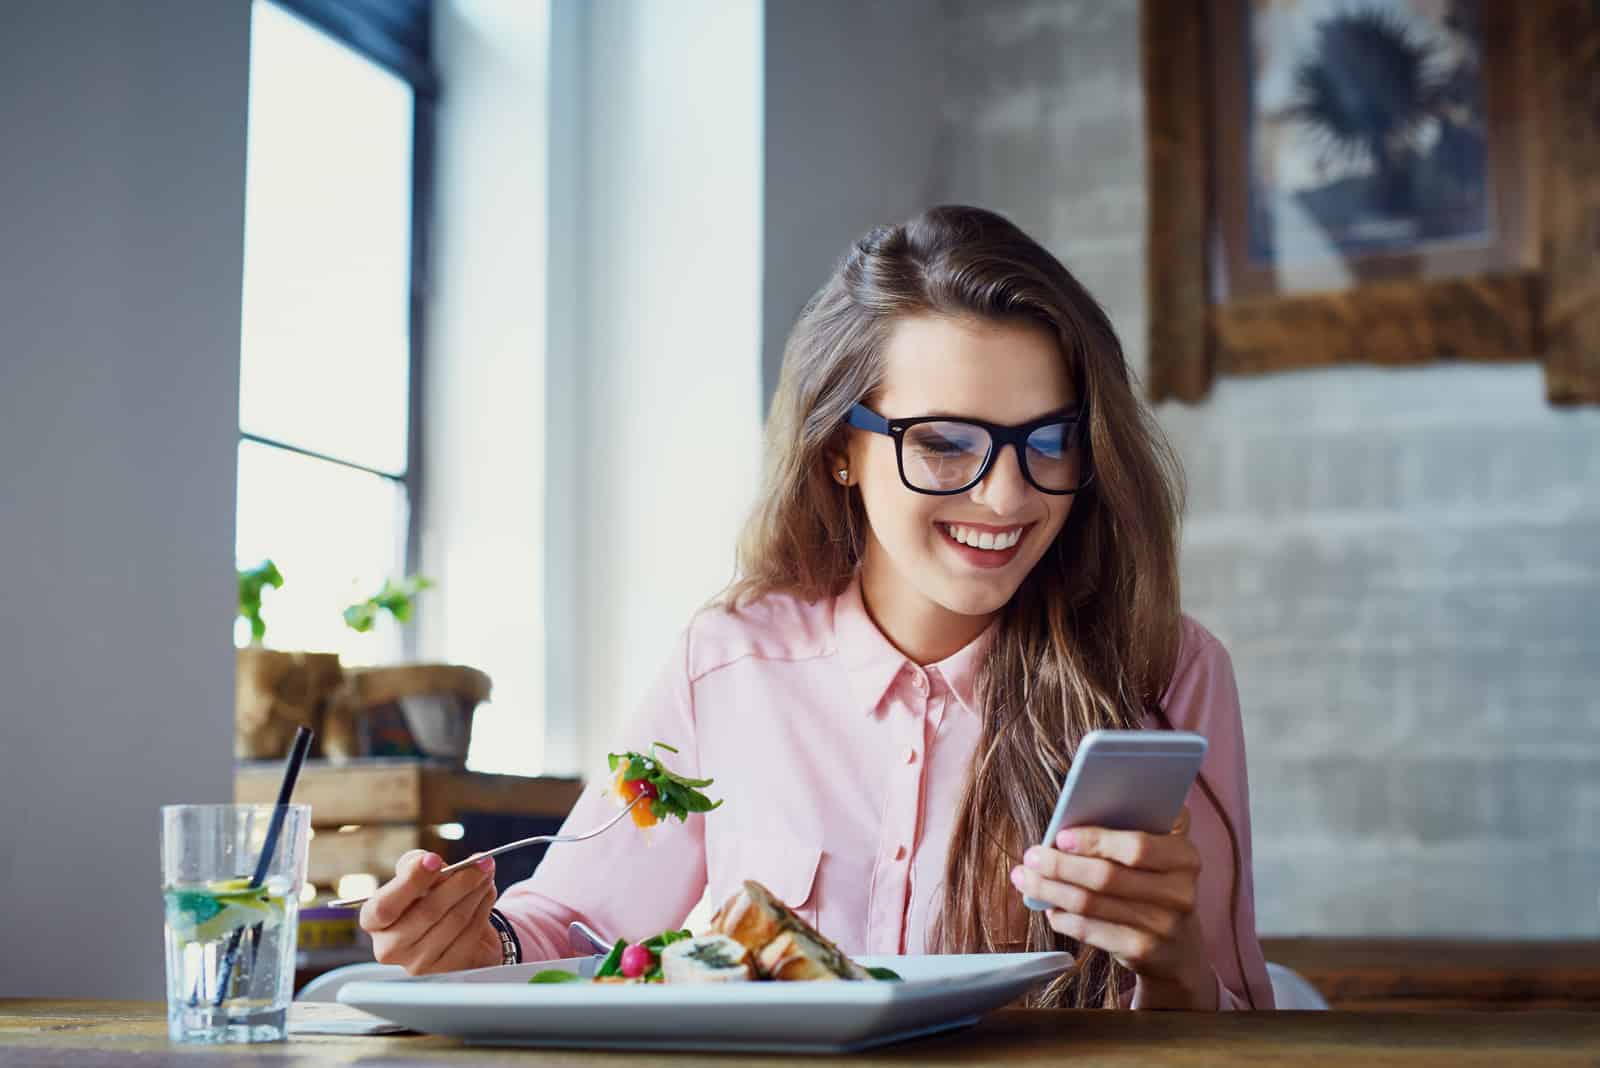 une femme souriante aux longs cheveux bruns est assise dans un café en train de manger et de taper au téléphone